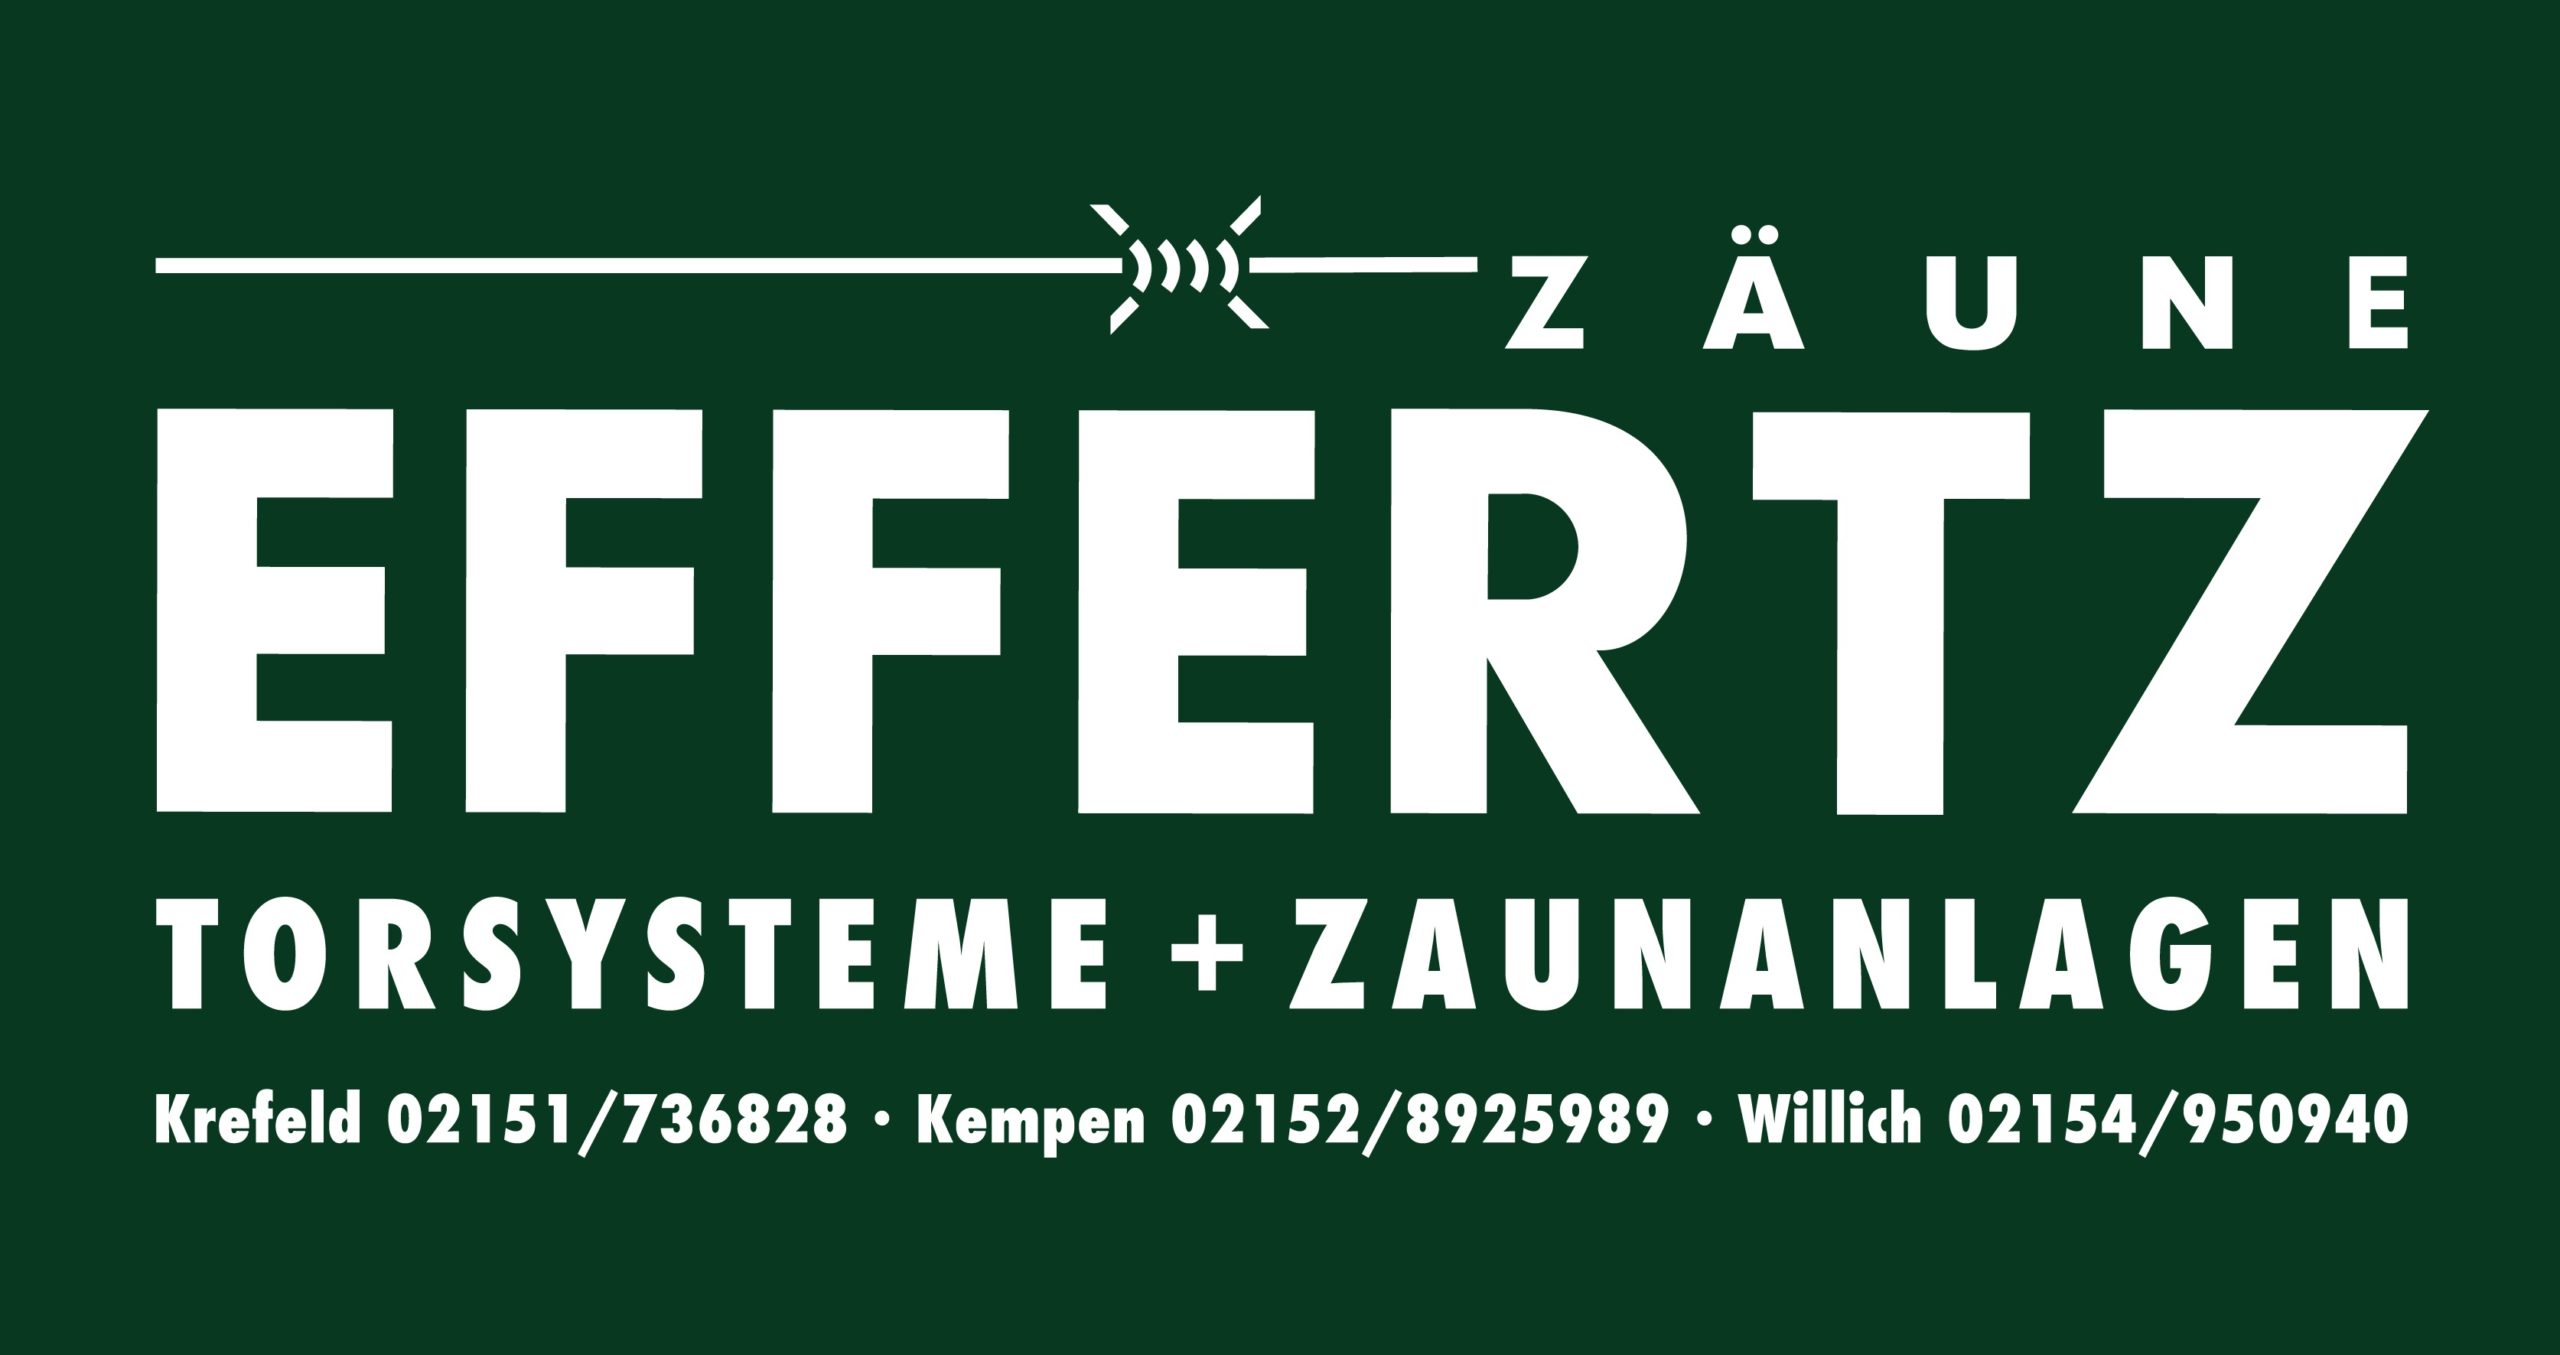 Zäune Effertz Logo